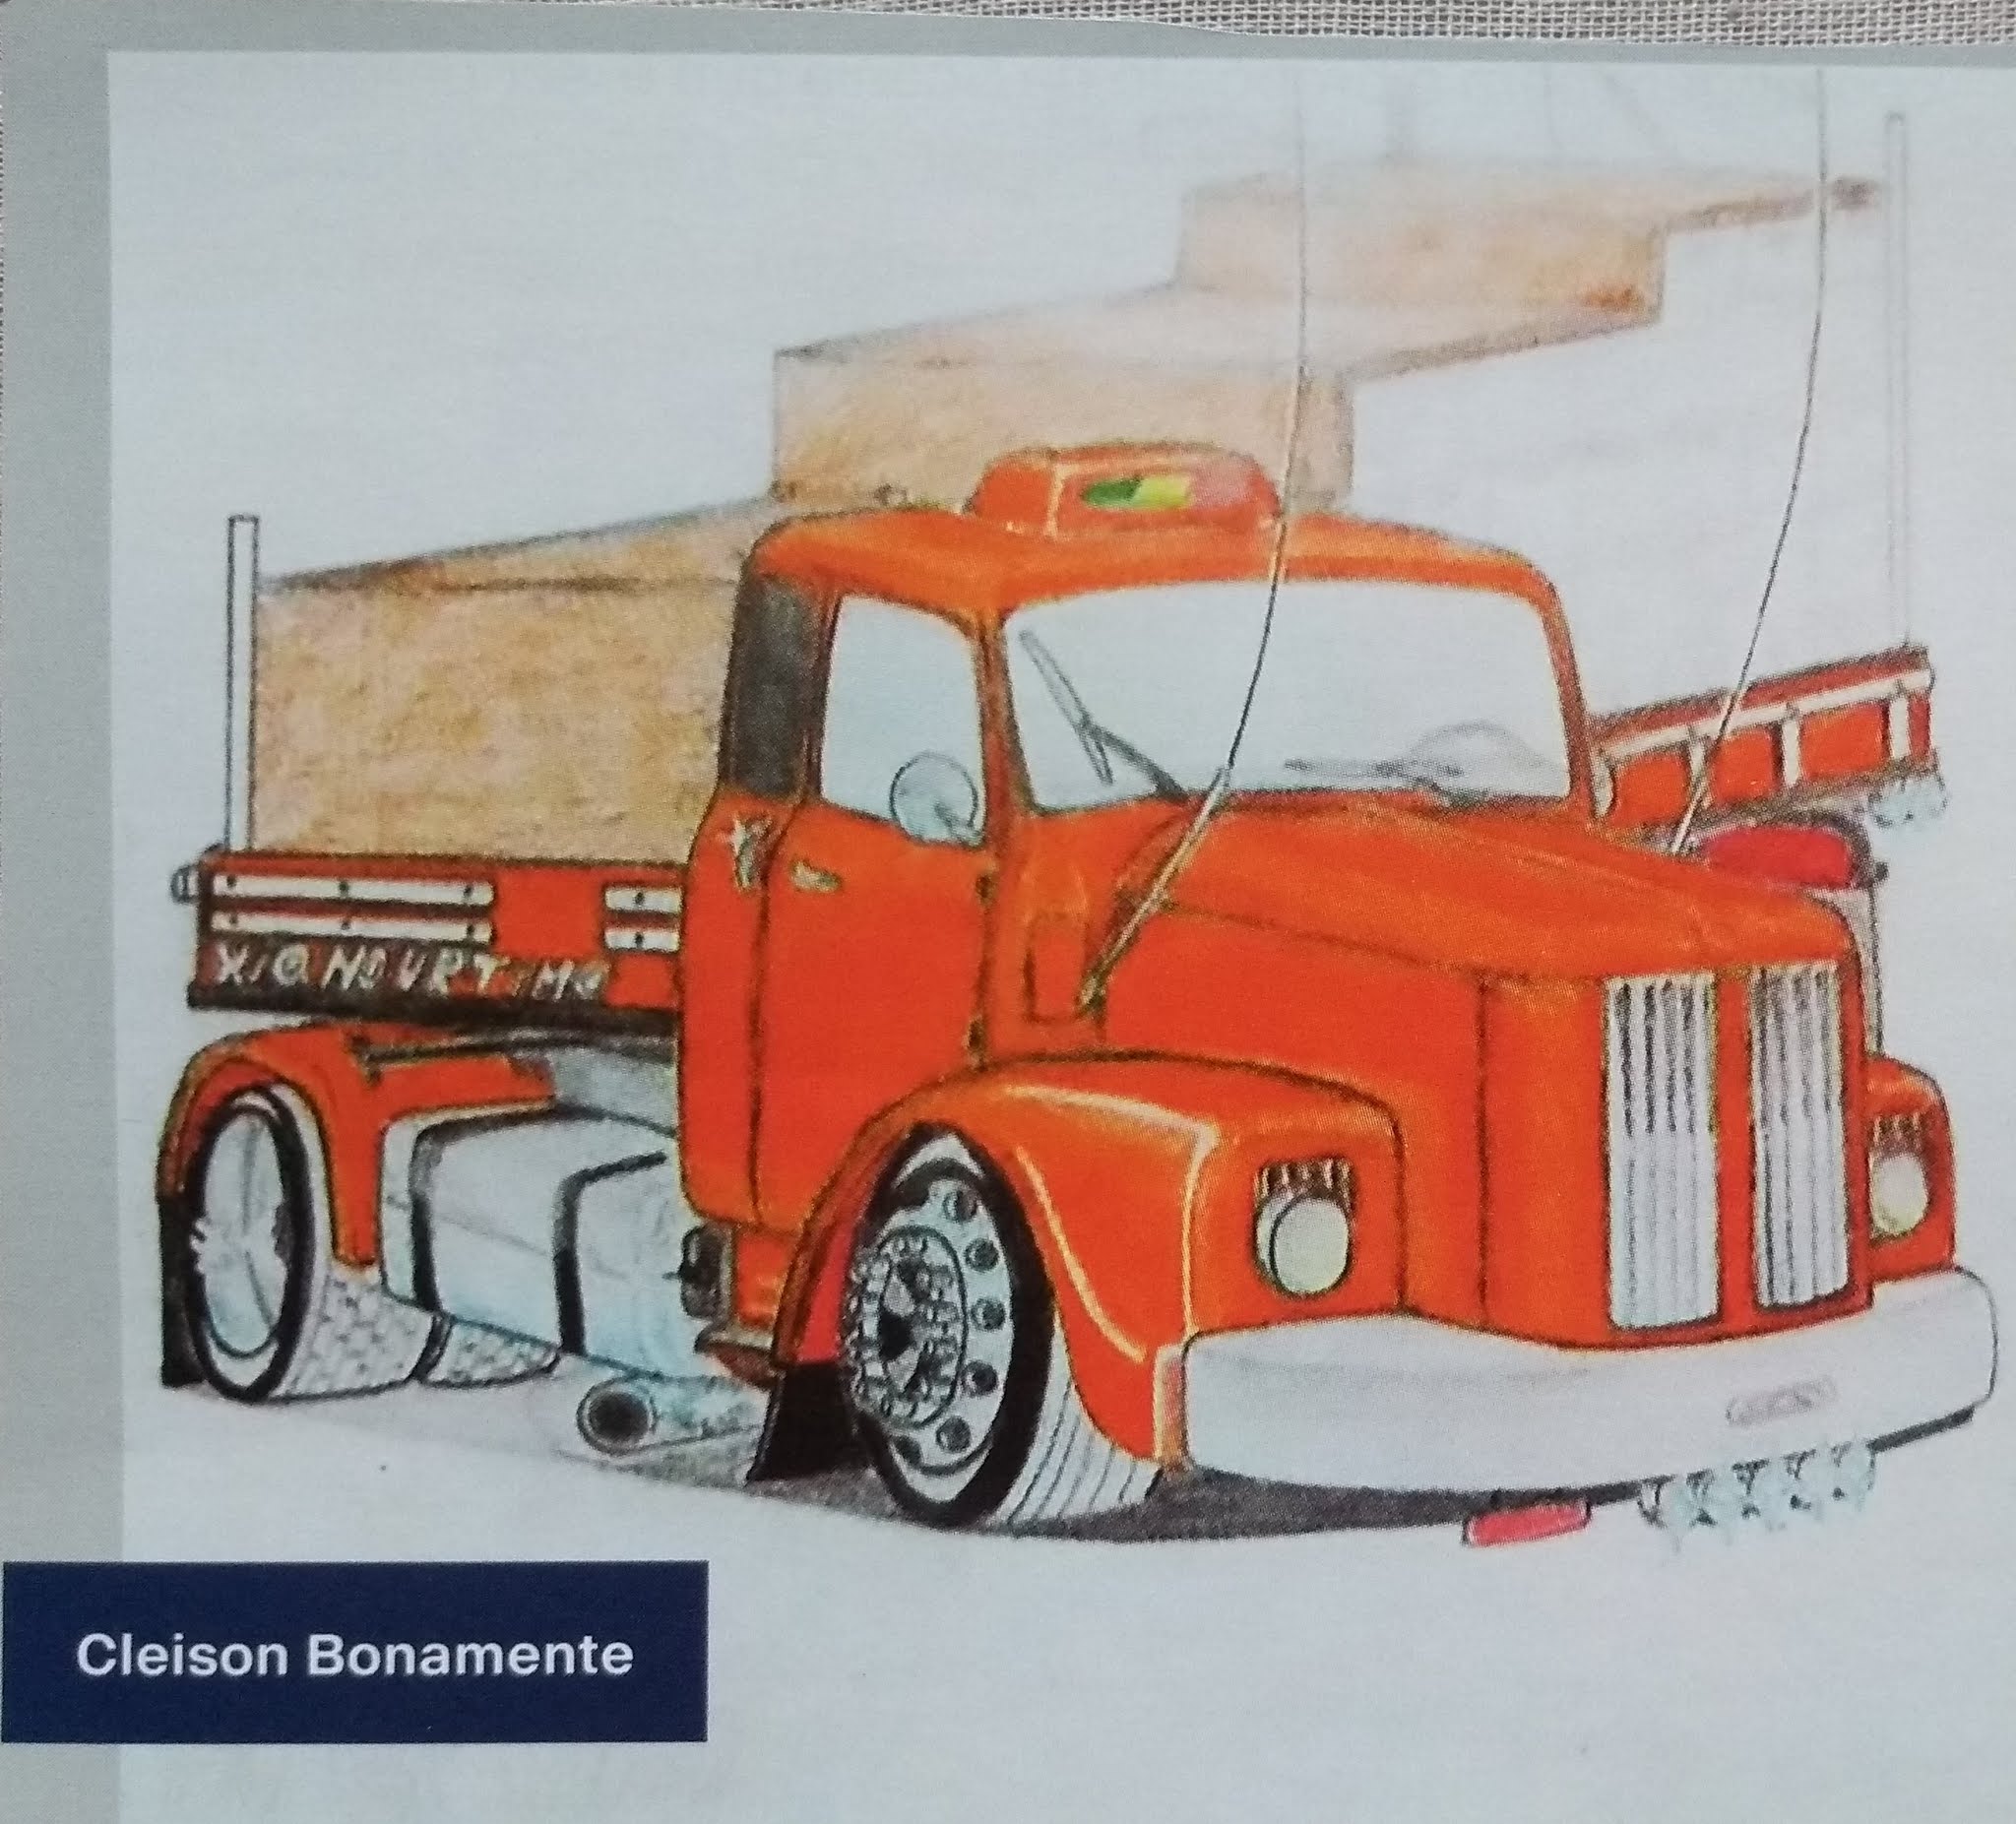 Desenho de caminhão